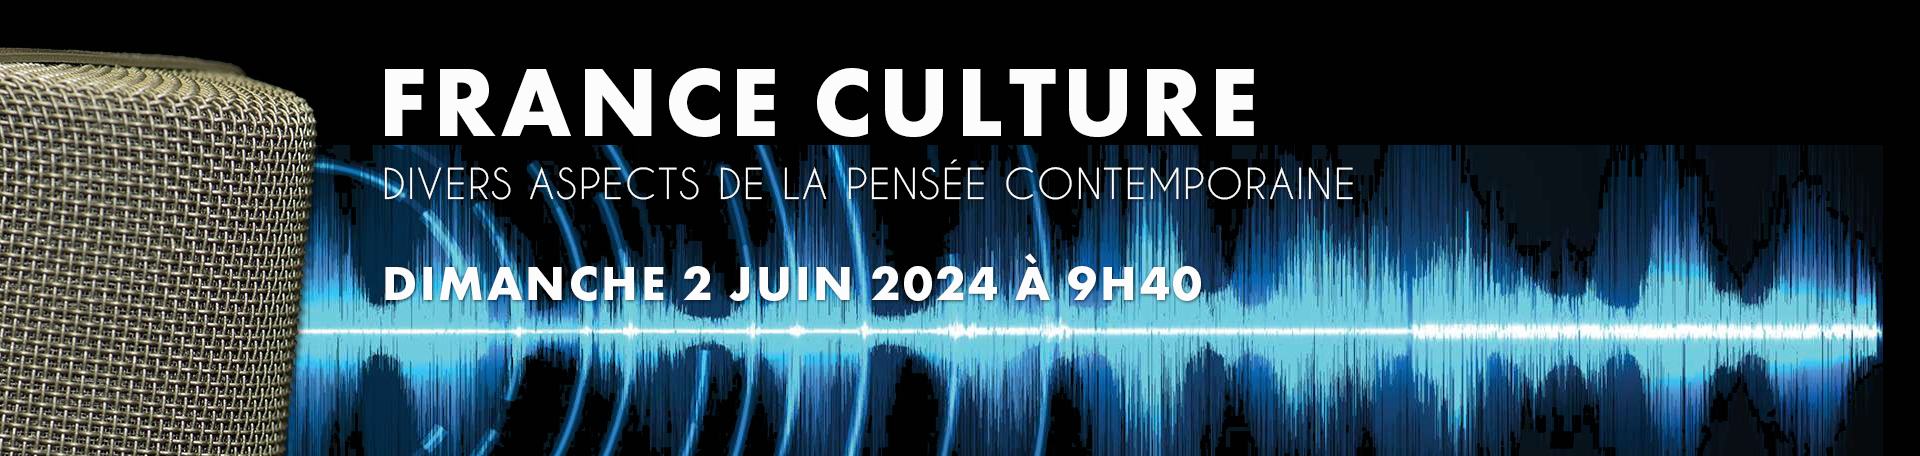 Émission Divers aspects de la pensée contemporaine dimanche 2 juin 2024 à 9h40 sur France Culture 